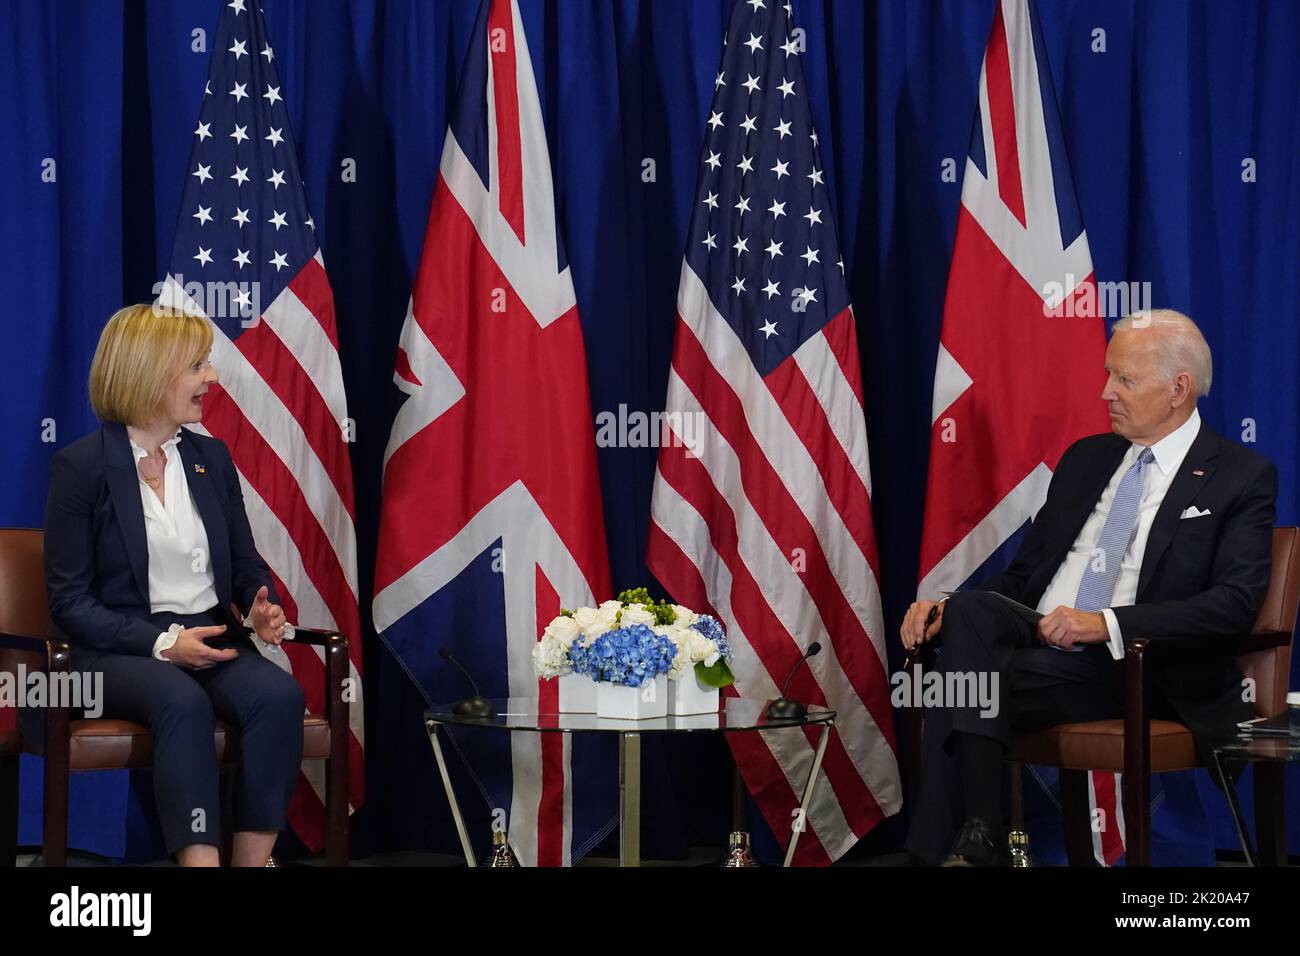 La Primera Ministra Liz Truss mantiene un acuerdo bilateral con el Presidente de Estados Unidos Joe Biden en el edificio de la ONU en Nueva York, durante su visita a Estados Unidos para asistir a la Asamblea General de la ONU de 77th. Fecha de la foto: Miércoles 21 de septiembre de 2022. Foto de stock